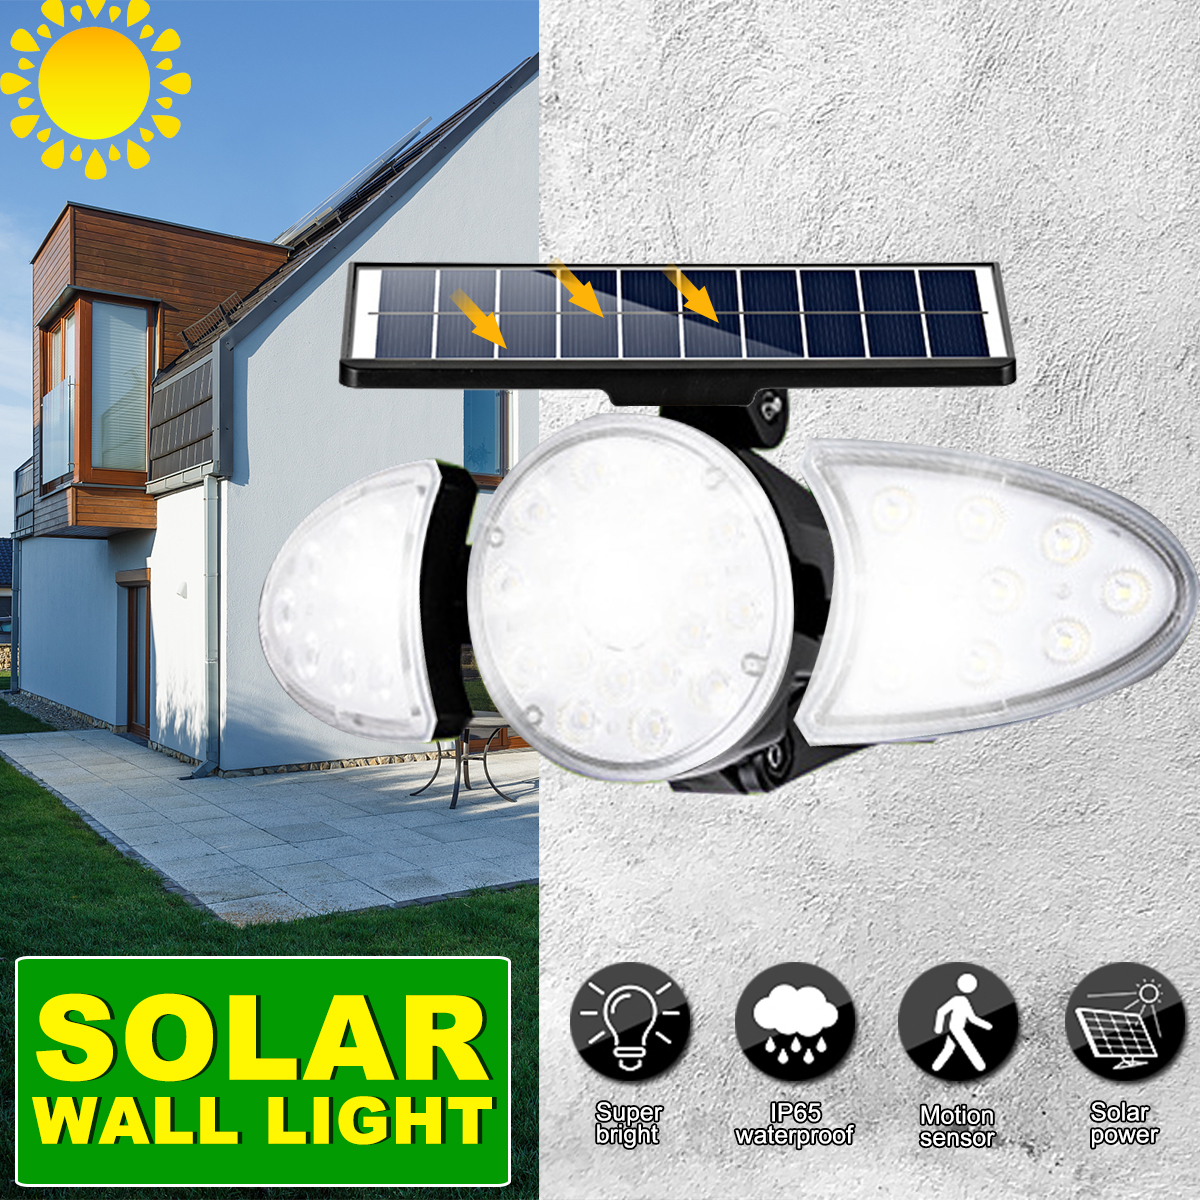 LED-Solar-Wall-Light-Adjustable-Head-IP65-Waterproof-Super-Bright-Body-Sensor-Light-Solar-Spotlight--1892140-1